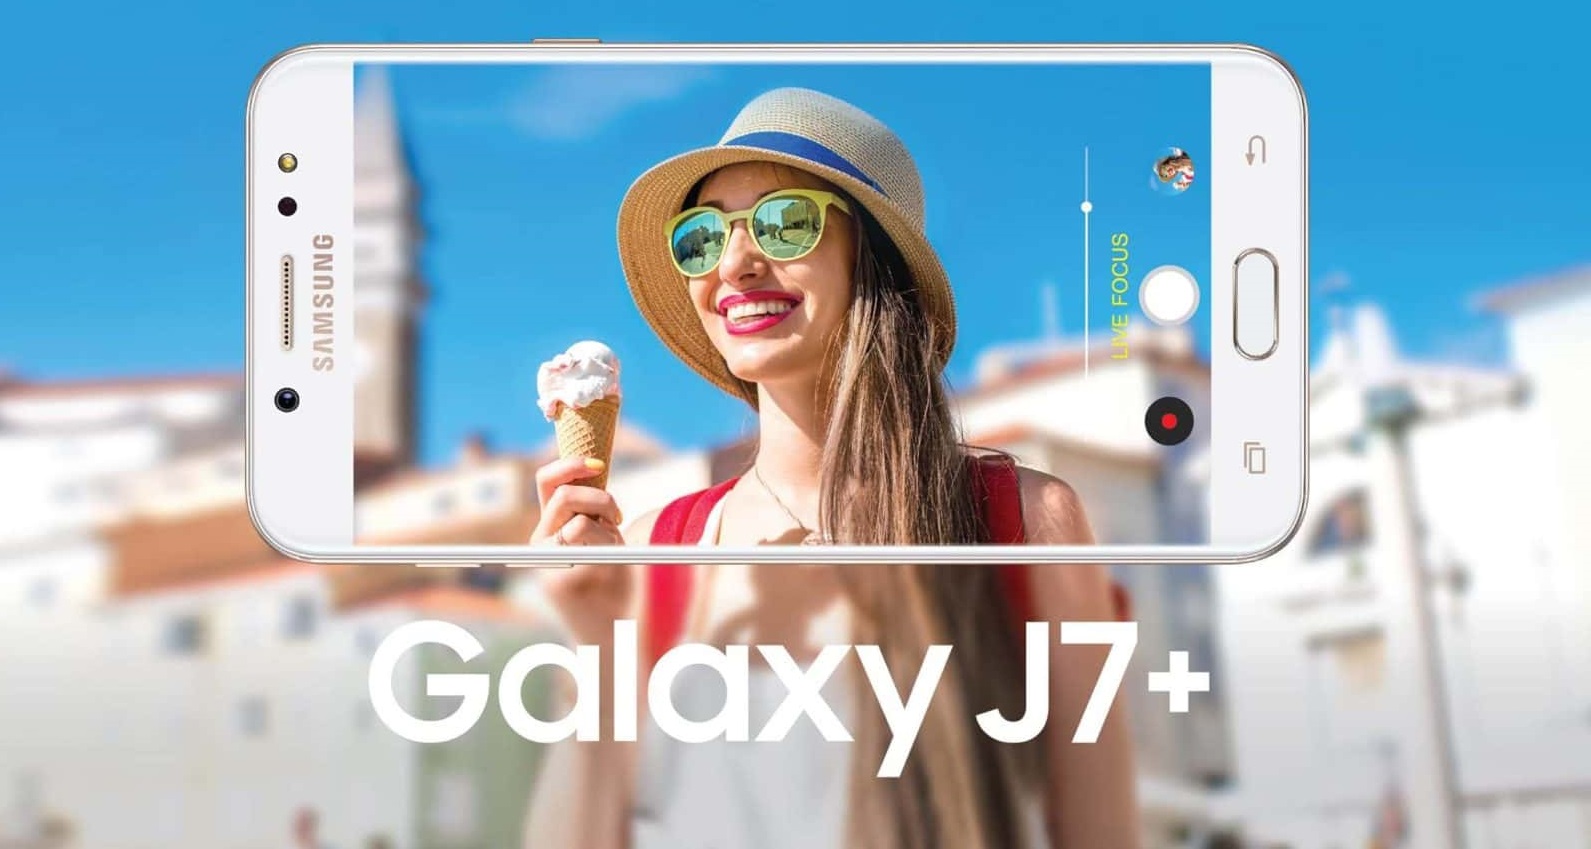 Galaxy J7 plus smartphone chụp ảnh xóa phông